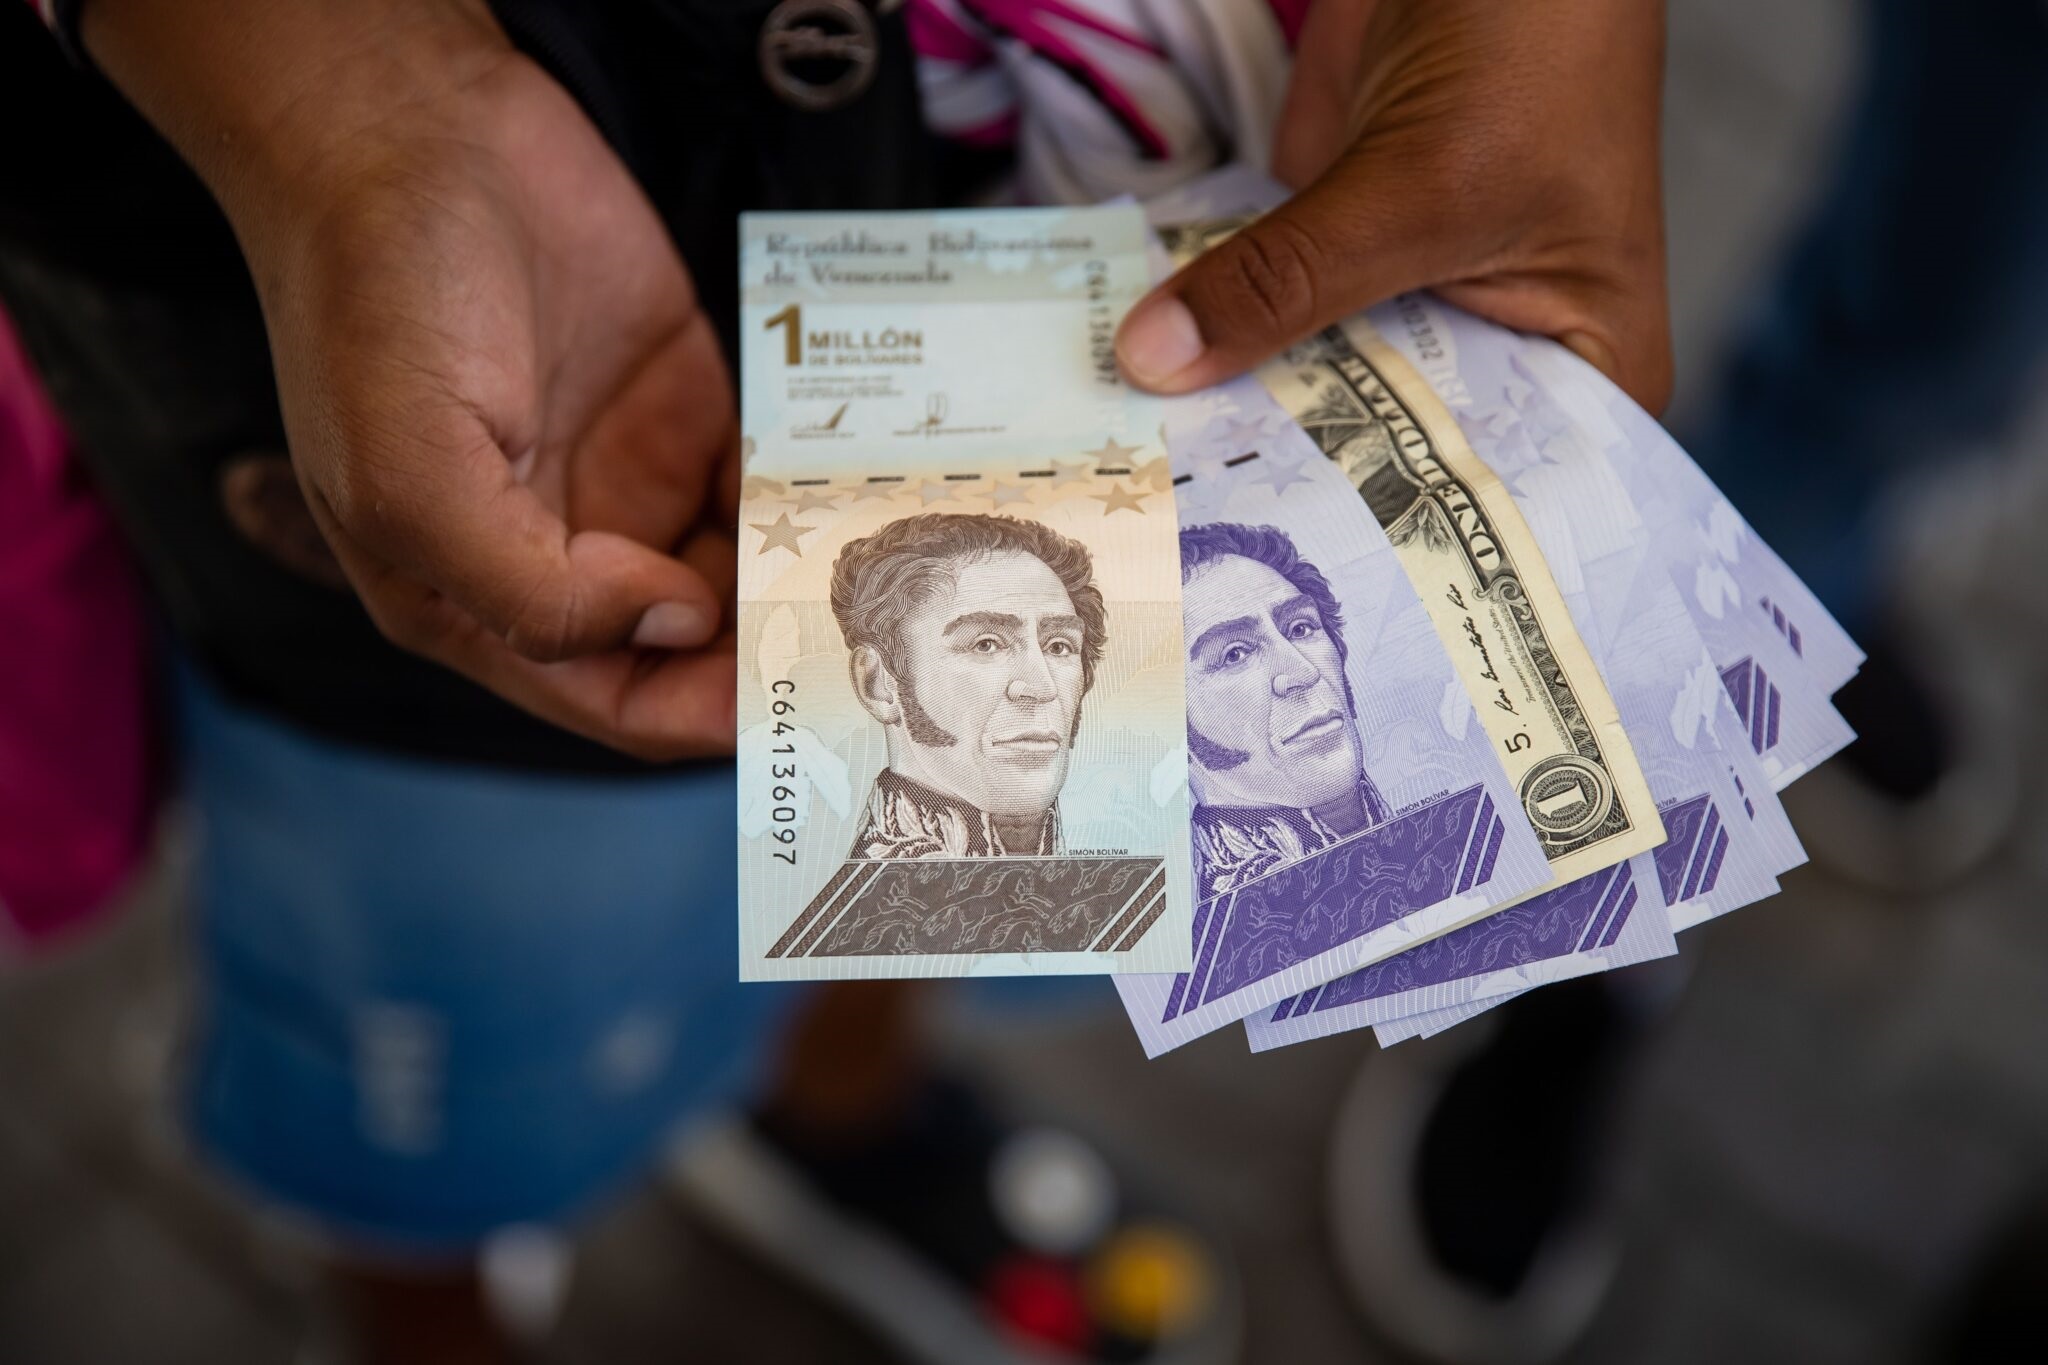 Ingreso integral inventado por el chavismo: Una estrategia para pulverizar el salario de los trabajadores